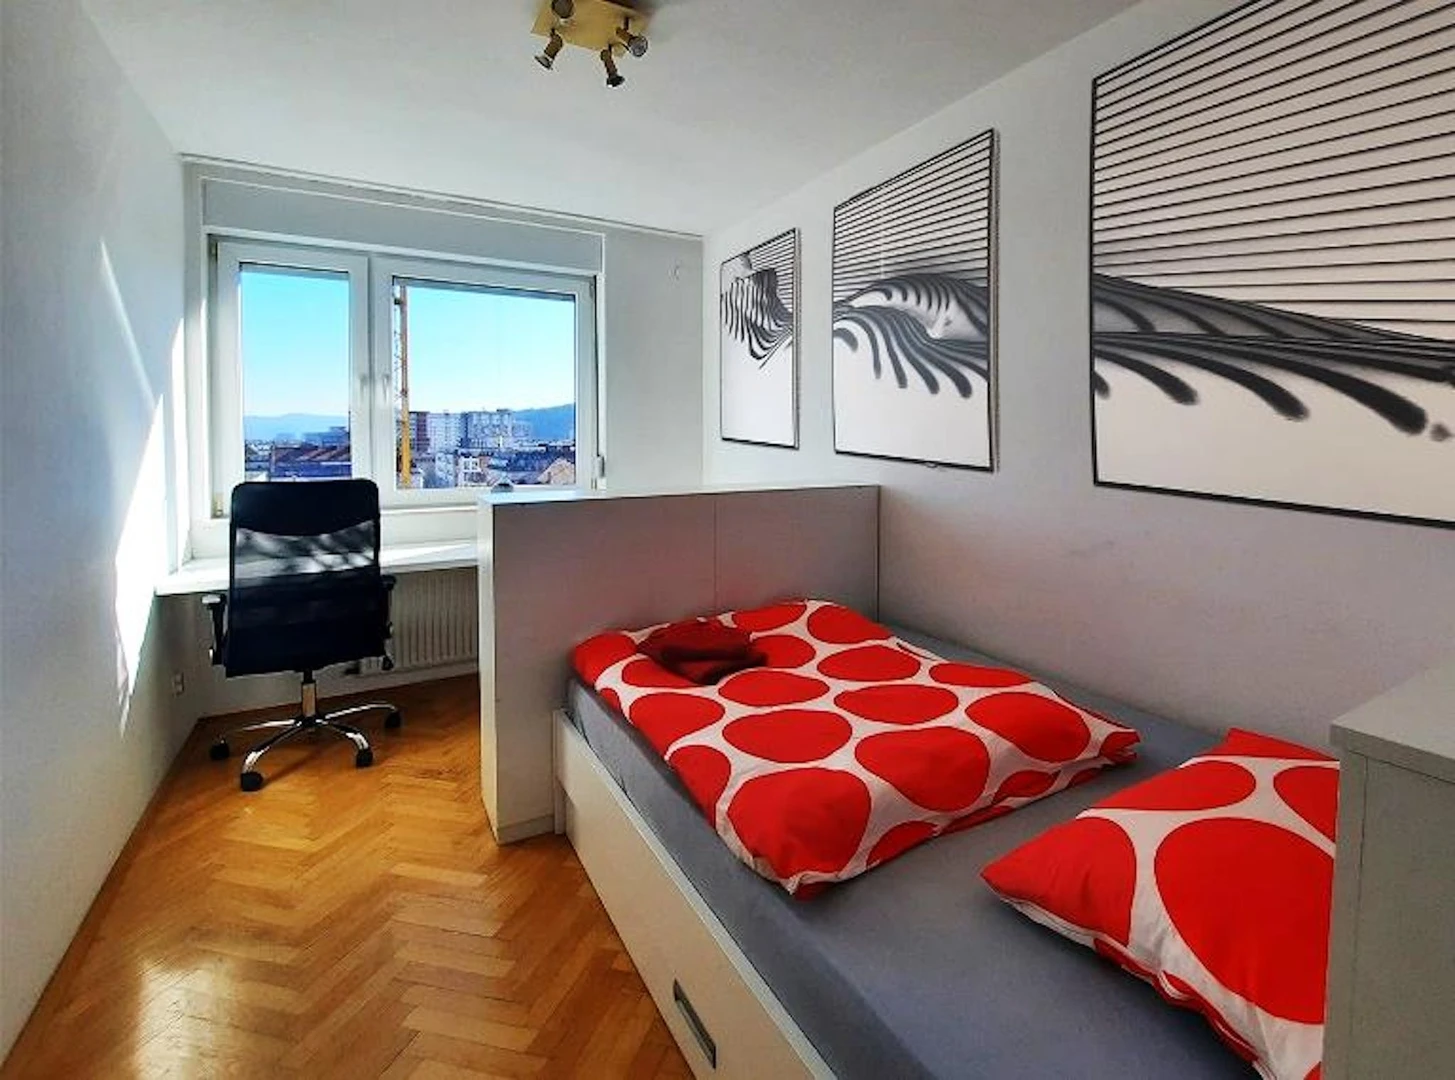 Luminosa stanza condivisa in affitto a Lubiana